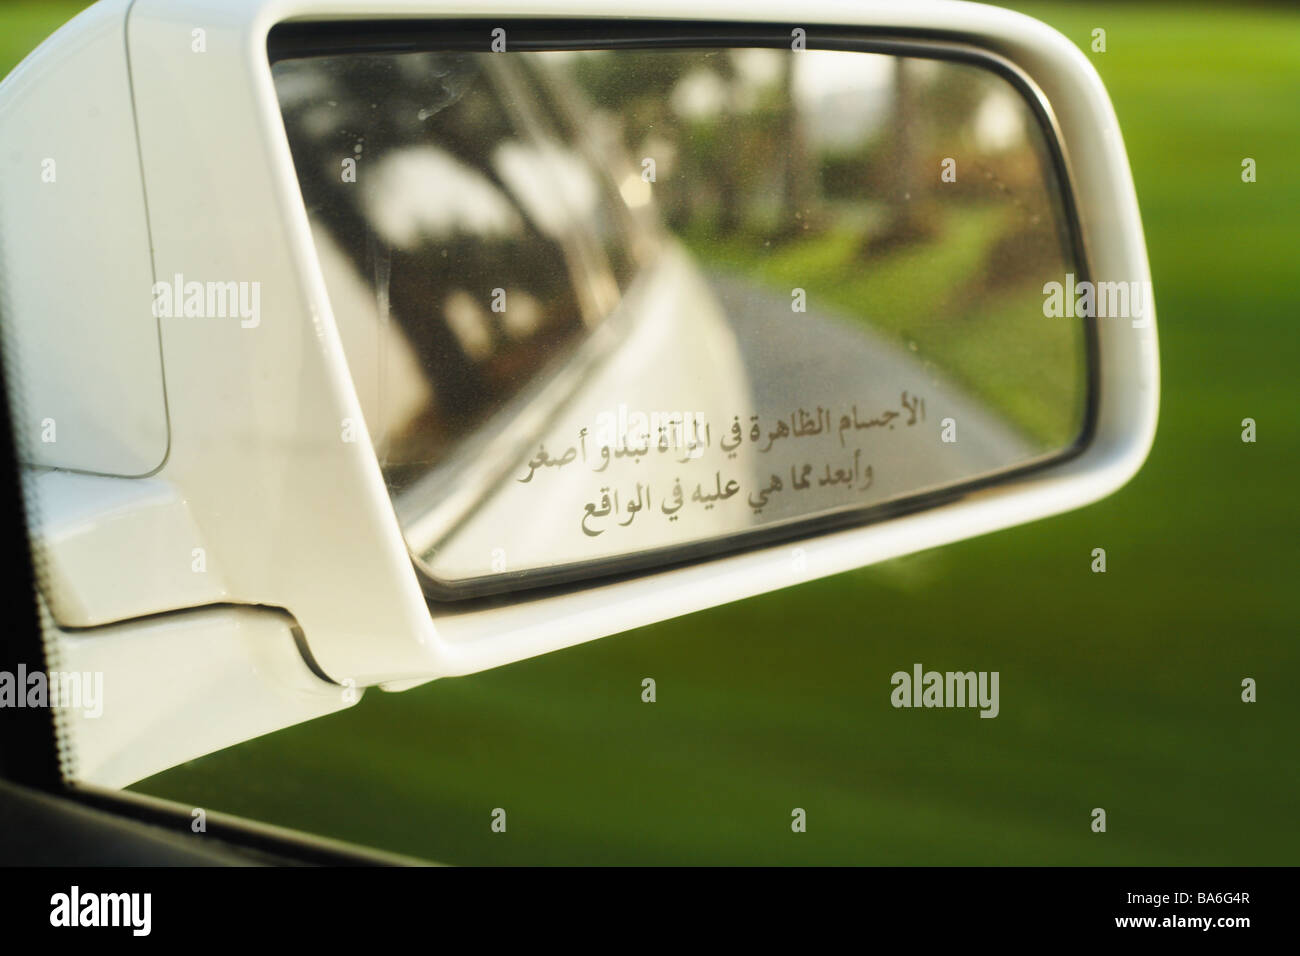 Auto Detail Seitenspiegel streicheln Arabisch Vereinigte Arabische Emirate  Dubai Fahrzeug außen-Spiegel Reflexion schreiben schreiben Arabisch  Stockfotografie - Alamy